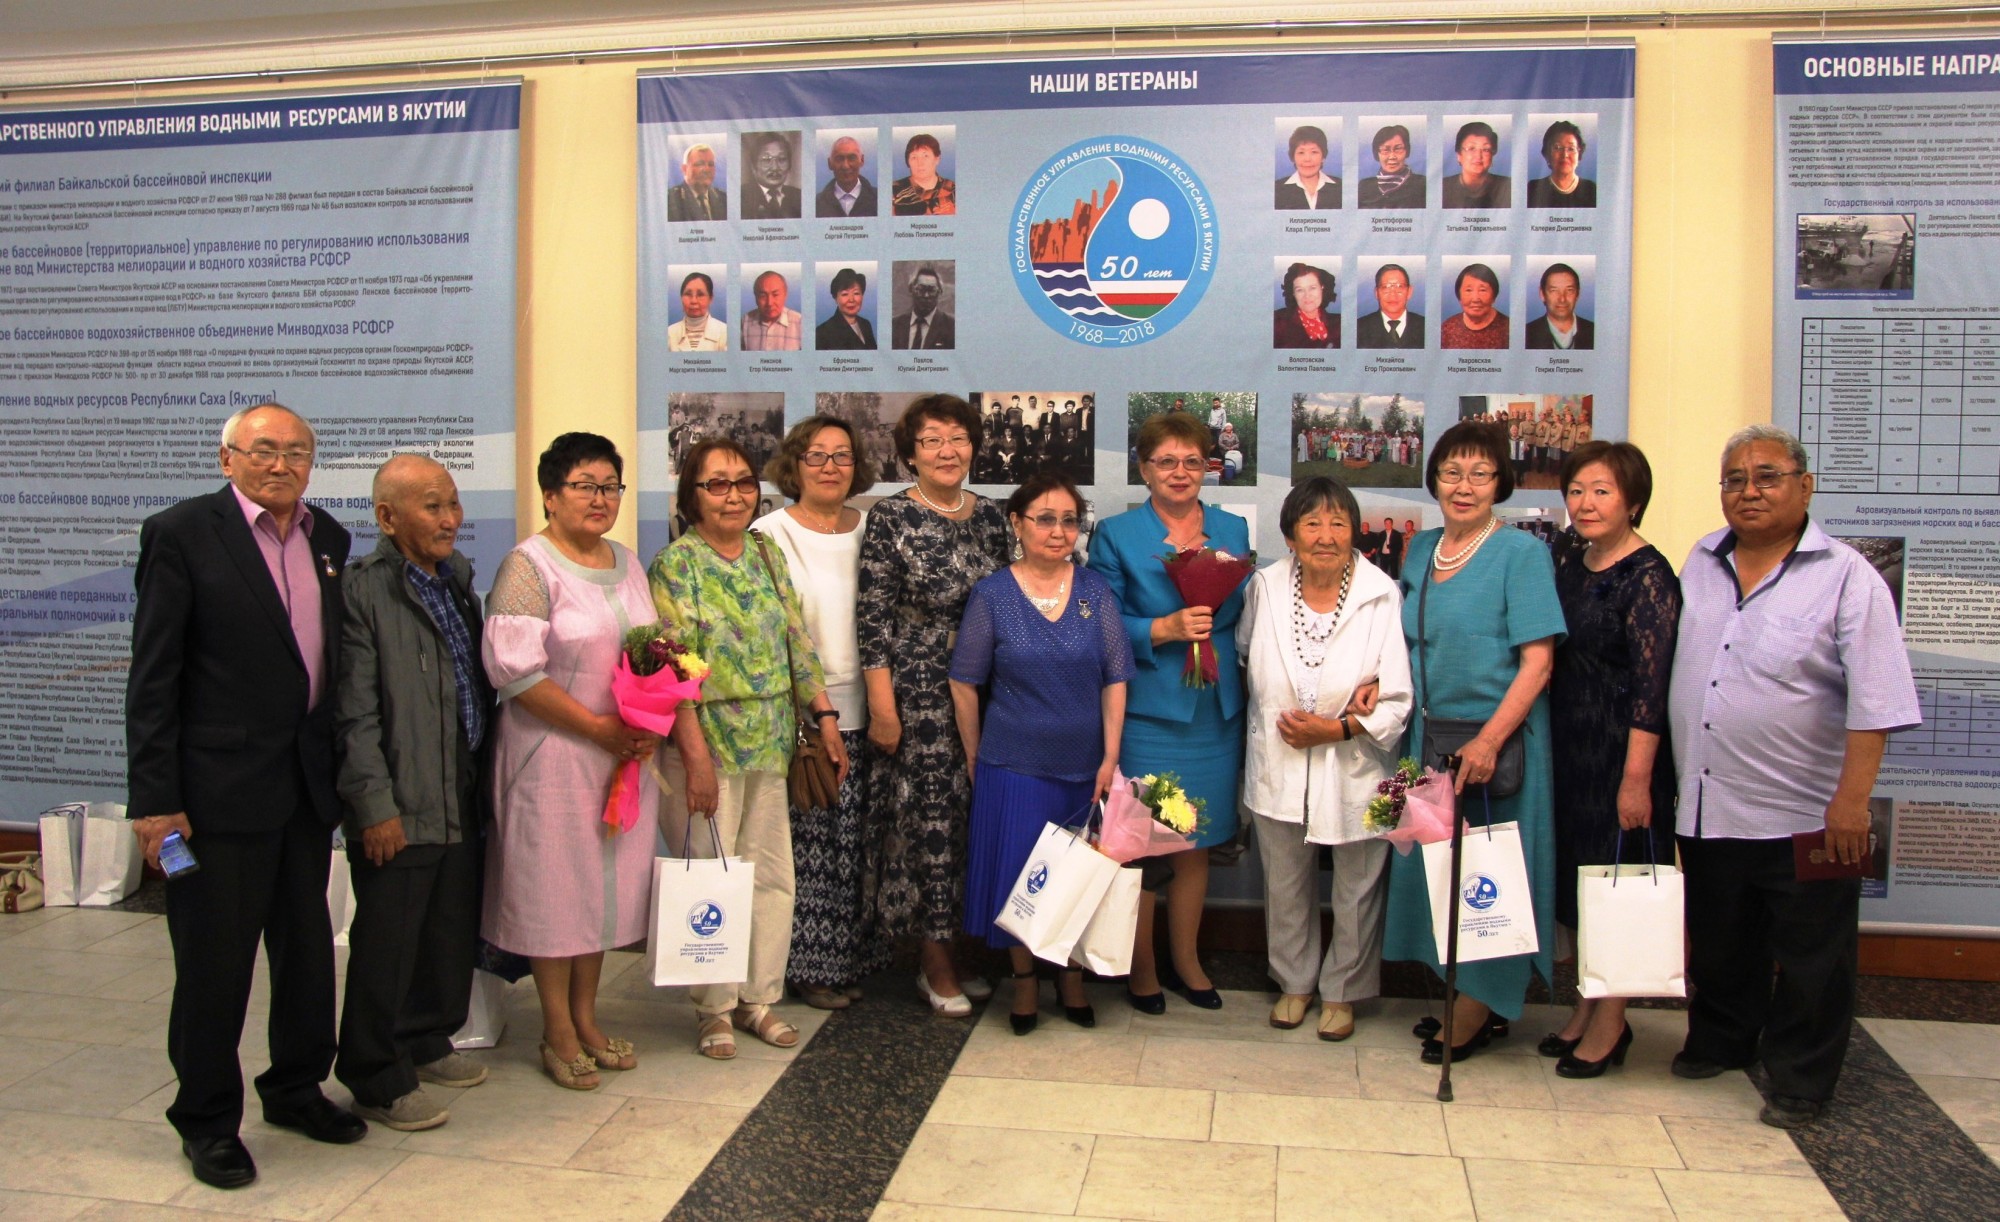 Состоялось торжественное заседание, посвященное 50-летию Государственному управлению водными ресурсами в Якутии